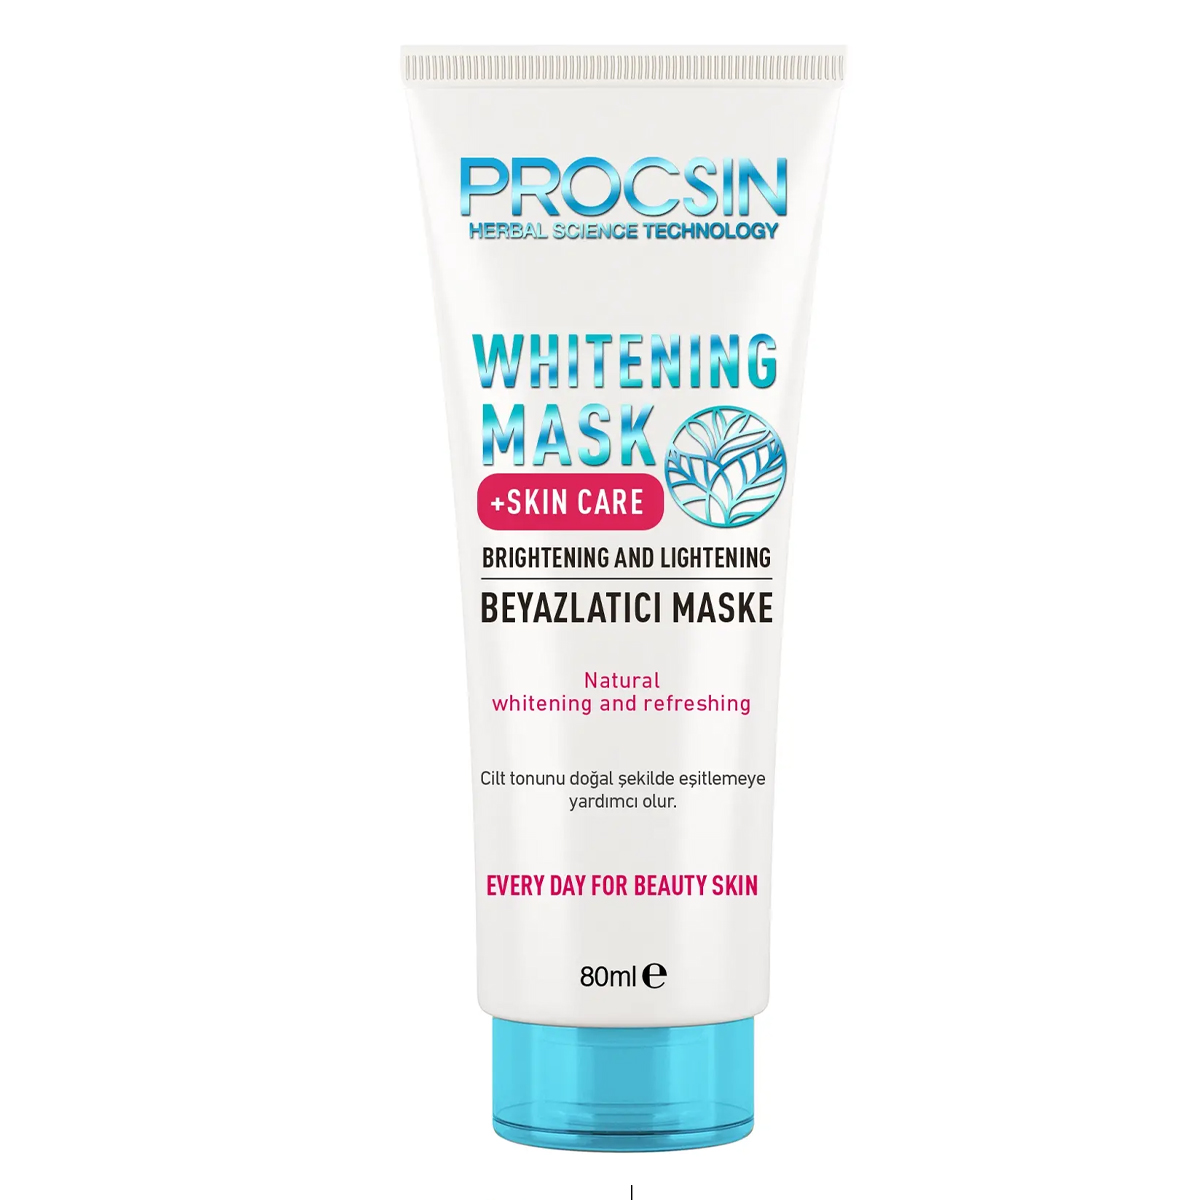 ماسک روشن کننده و درخشان کننده~Whitening Mask Skin Care~PROCSIN